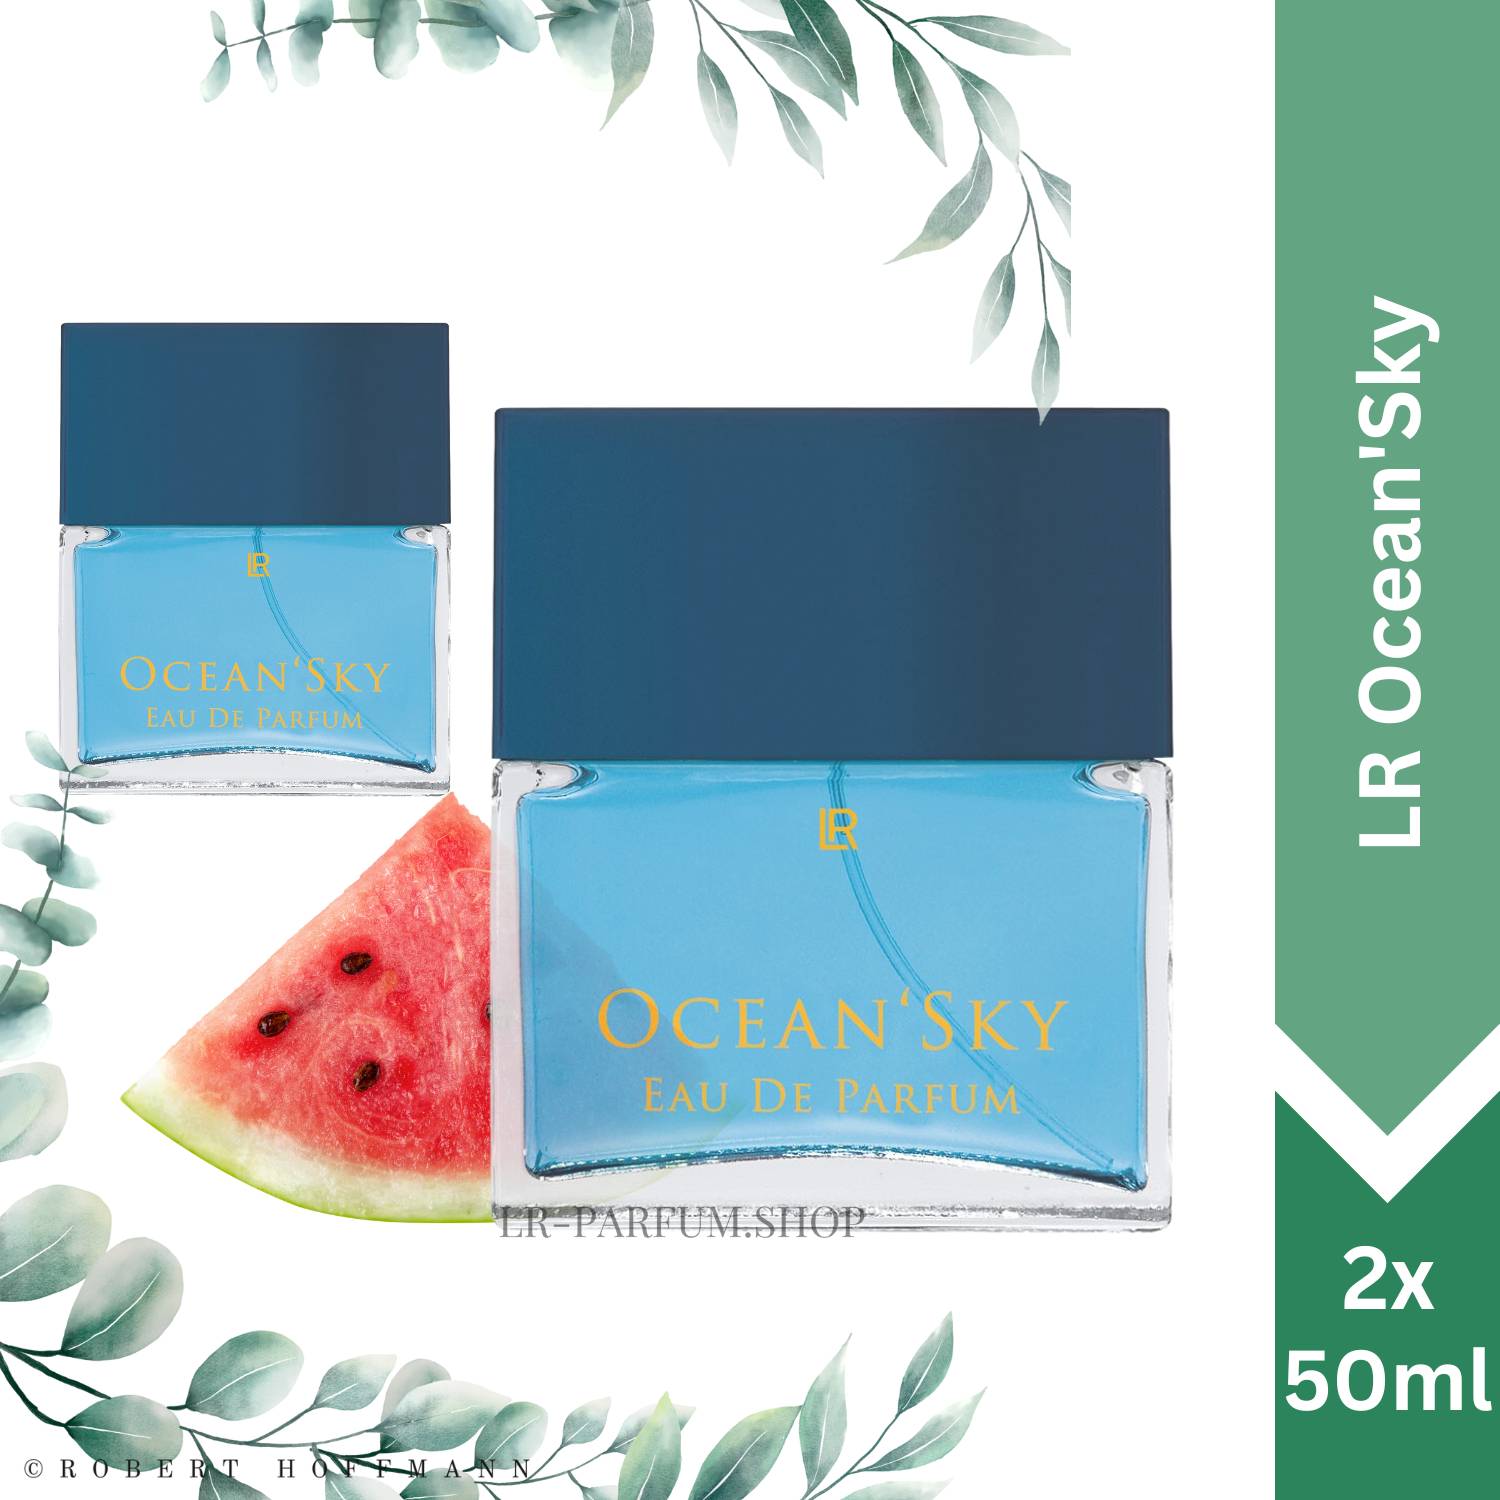 LR Ocean Sky - Eau de Parfum, 2er Pack (2x50ml) - LR-Parfum.shop